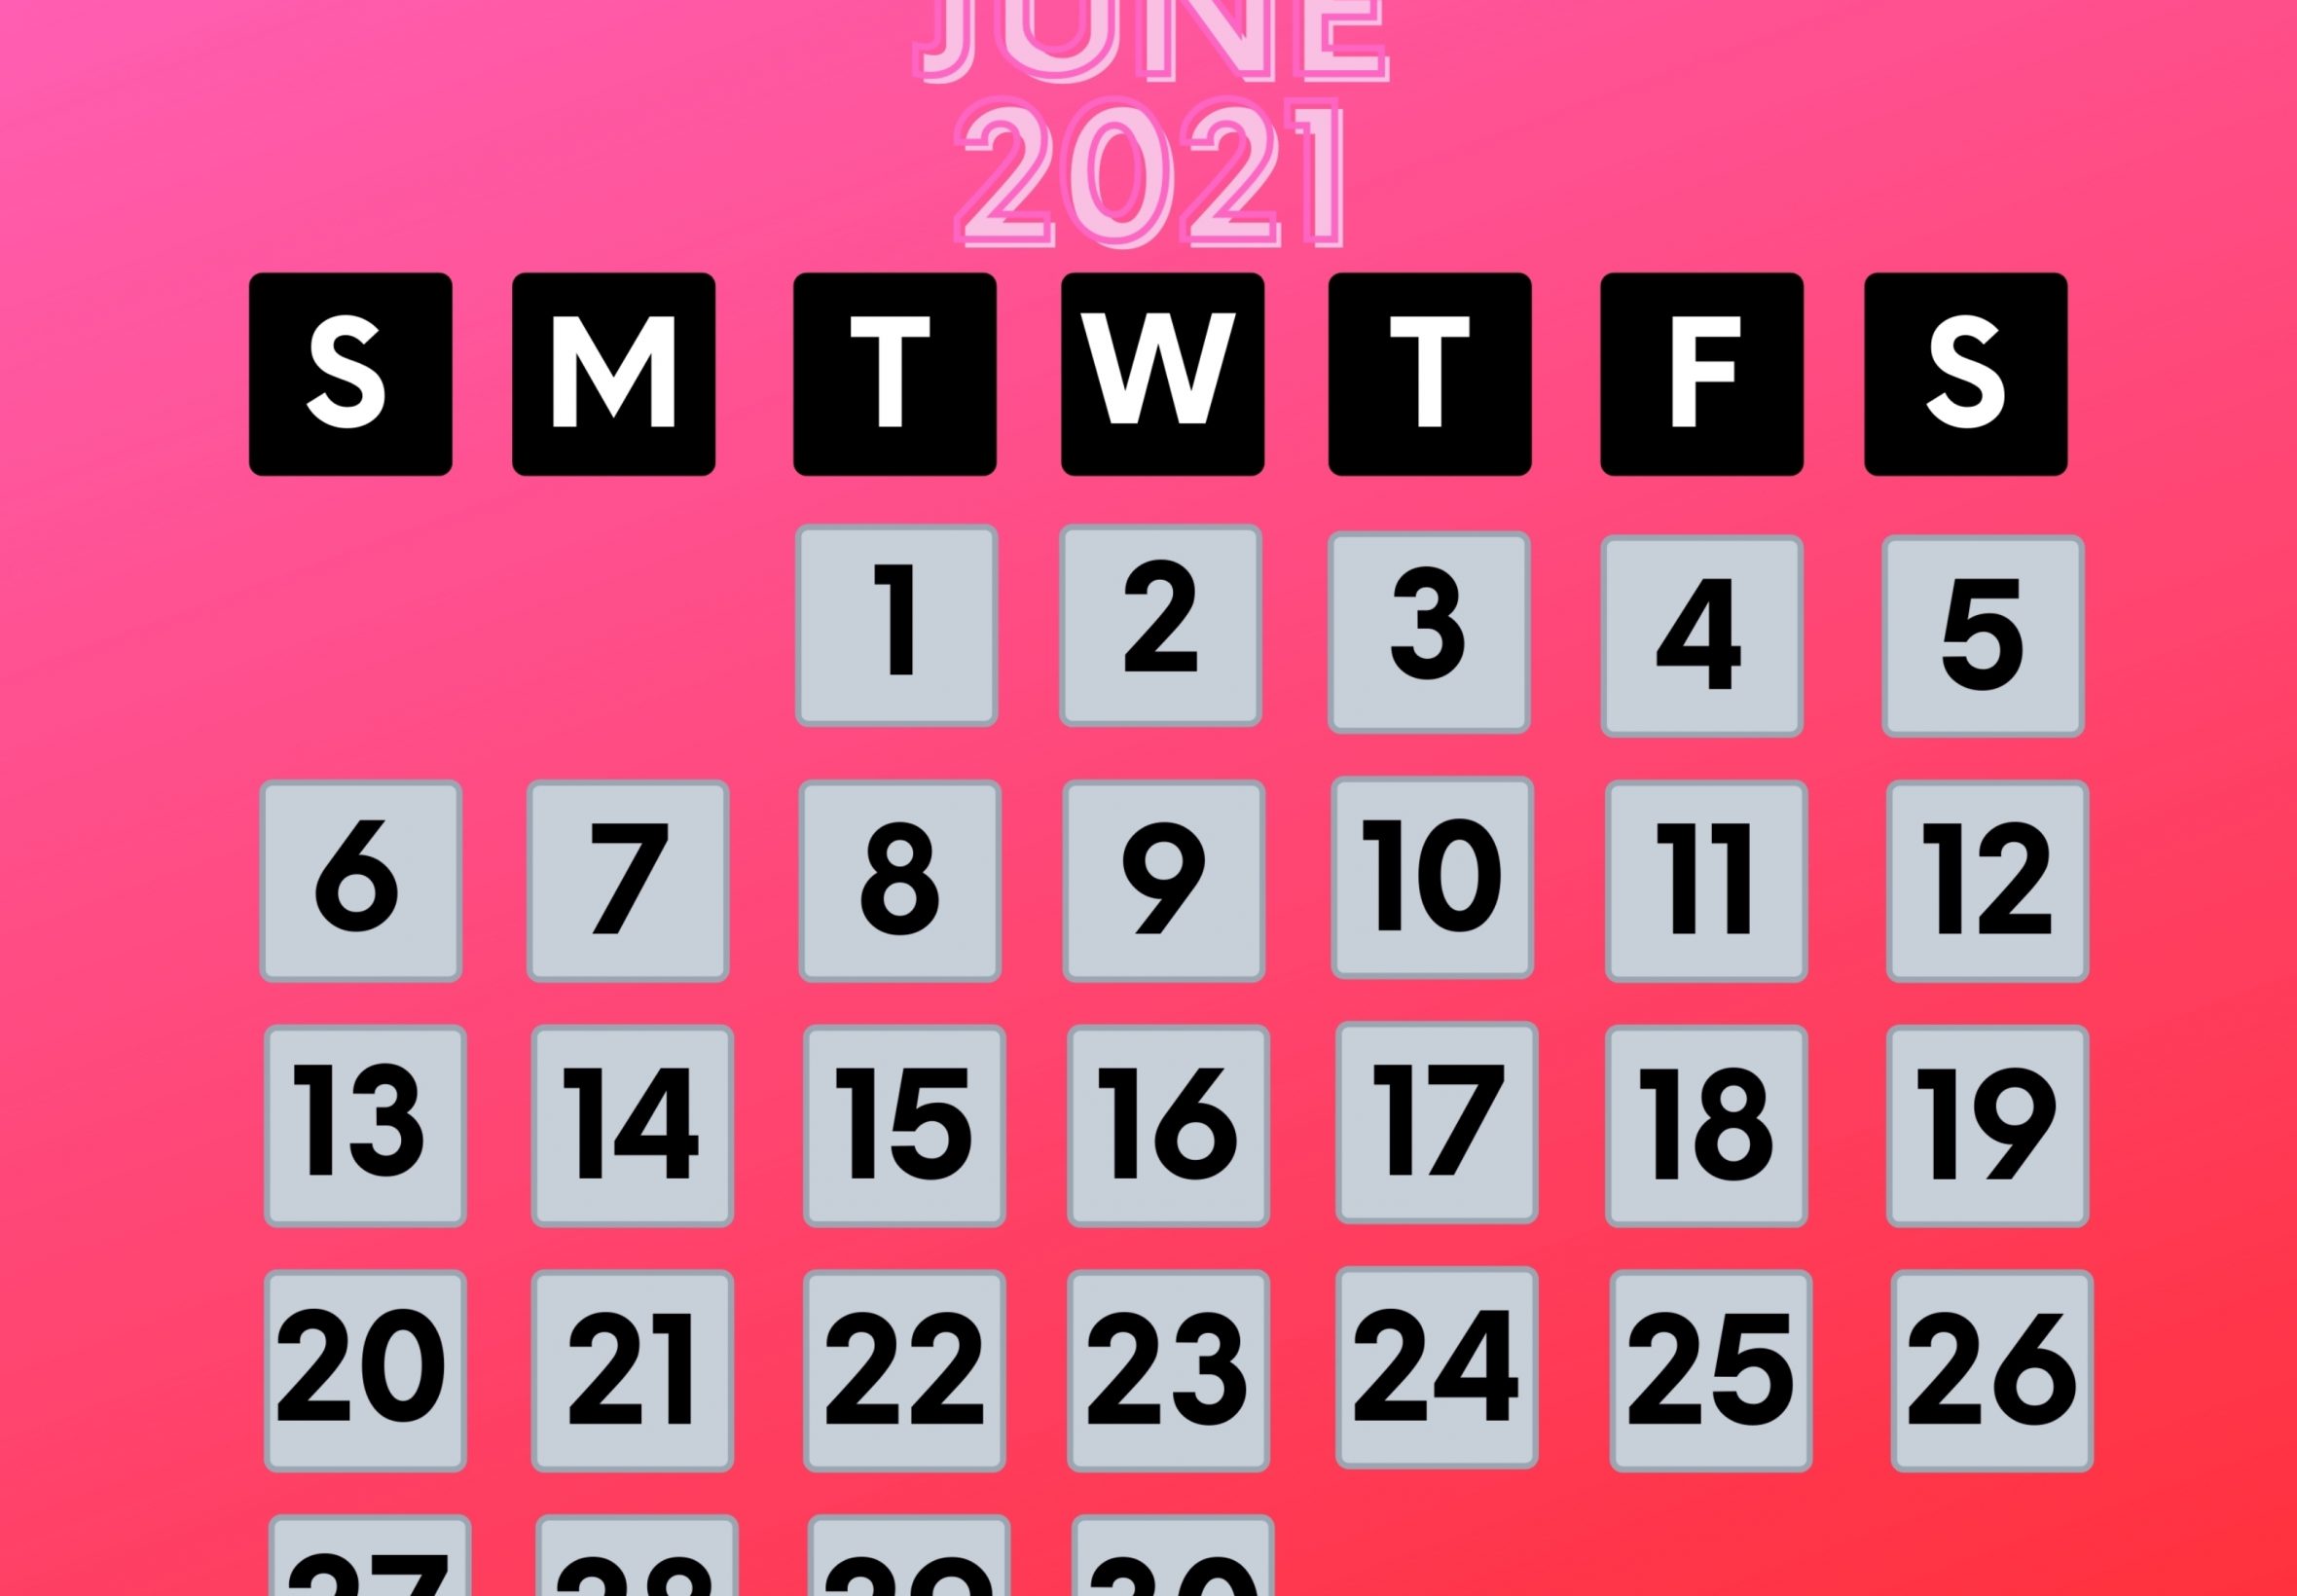 2360x1640 iPad Air wallpaper 4k June 2021 Calendar iPad Wallpaper 2360x1640 pixels resolution